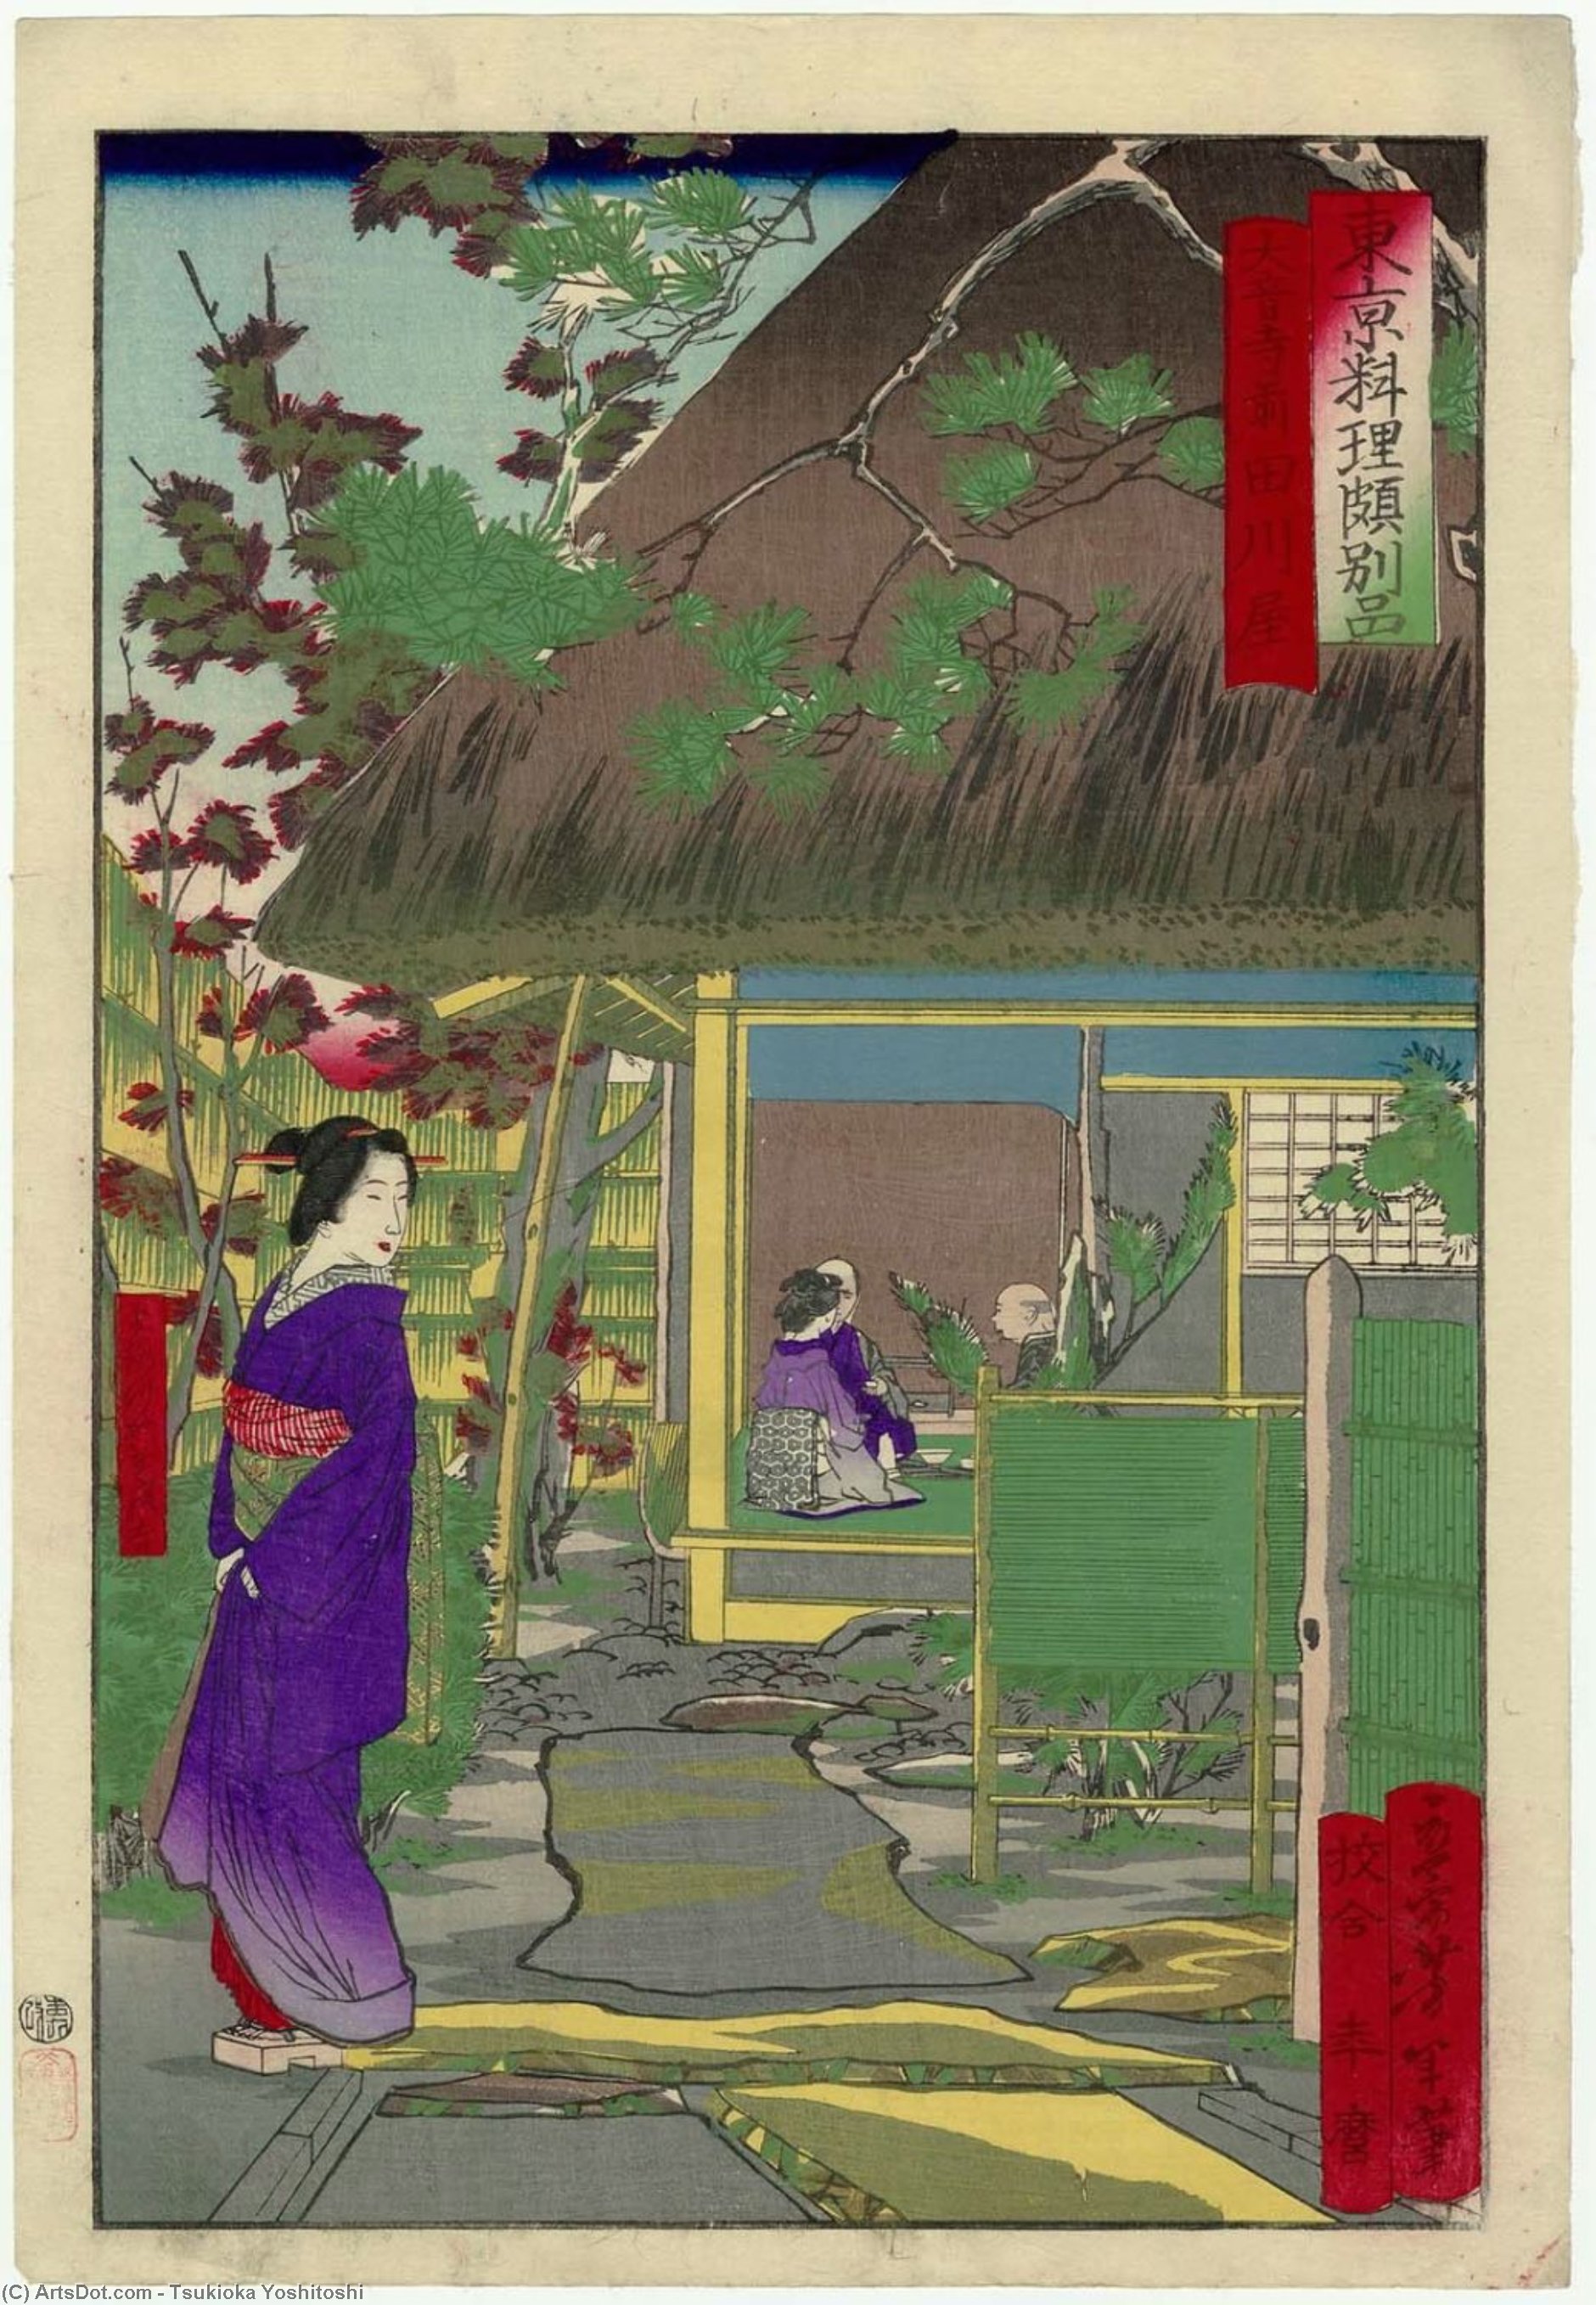 WikiOO.org - Encyclopedia of Fine Arts - Lukisan, Artwork Tsukioka Yoshitoshi - The Tagawaya Restaurant